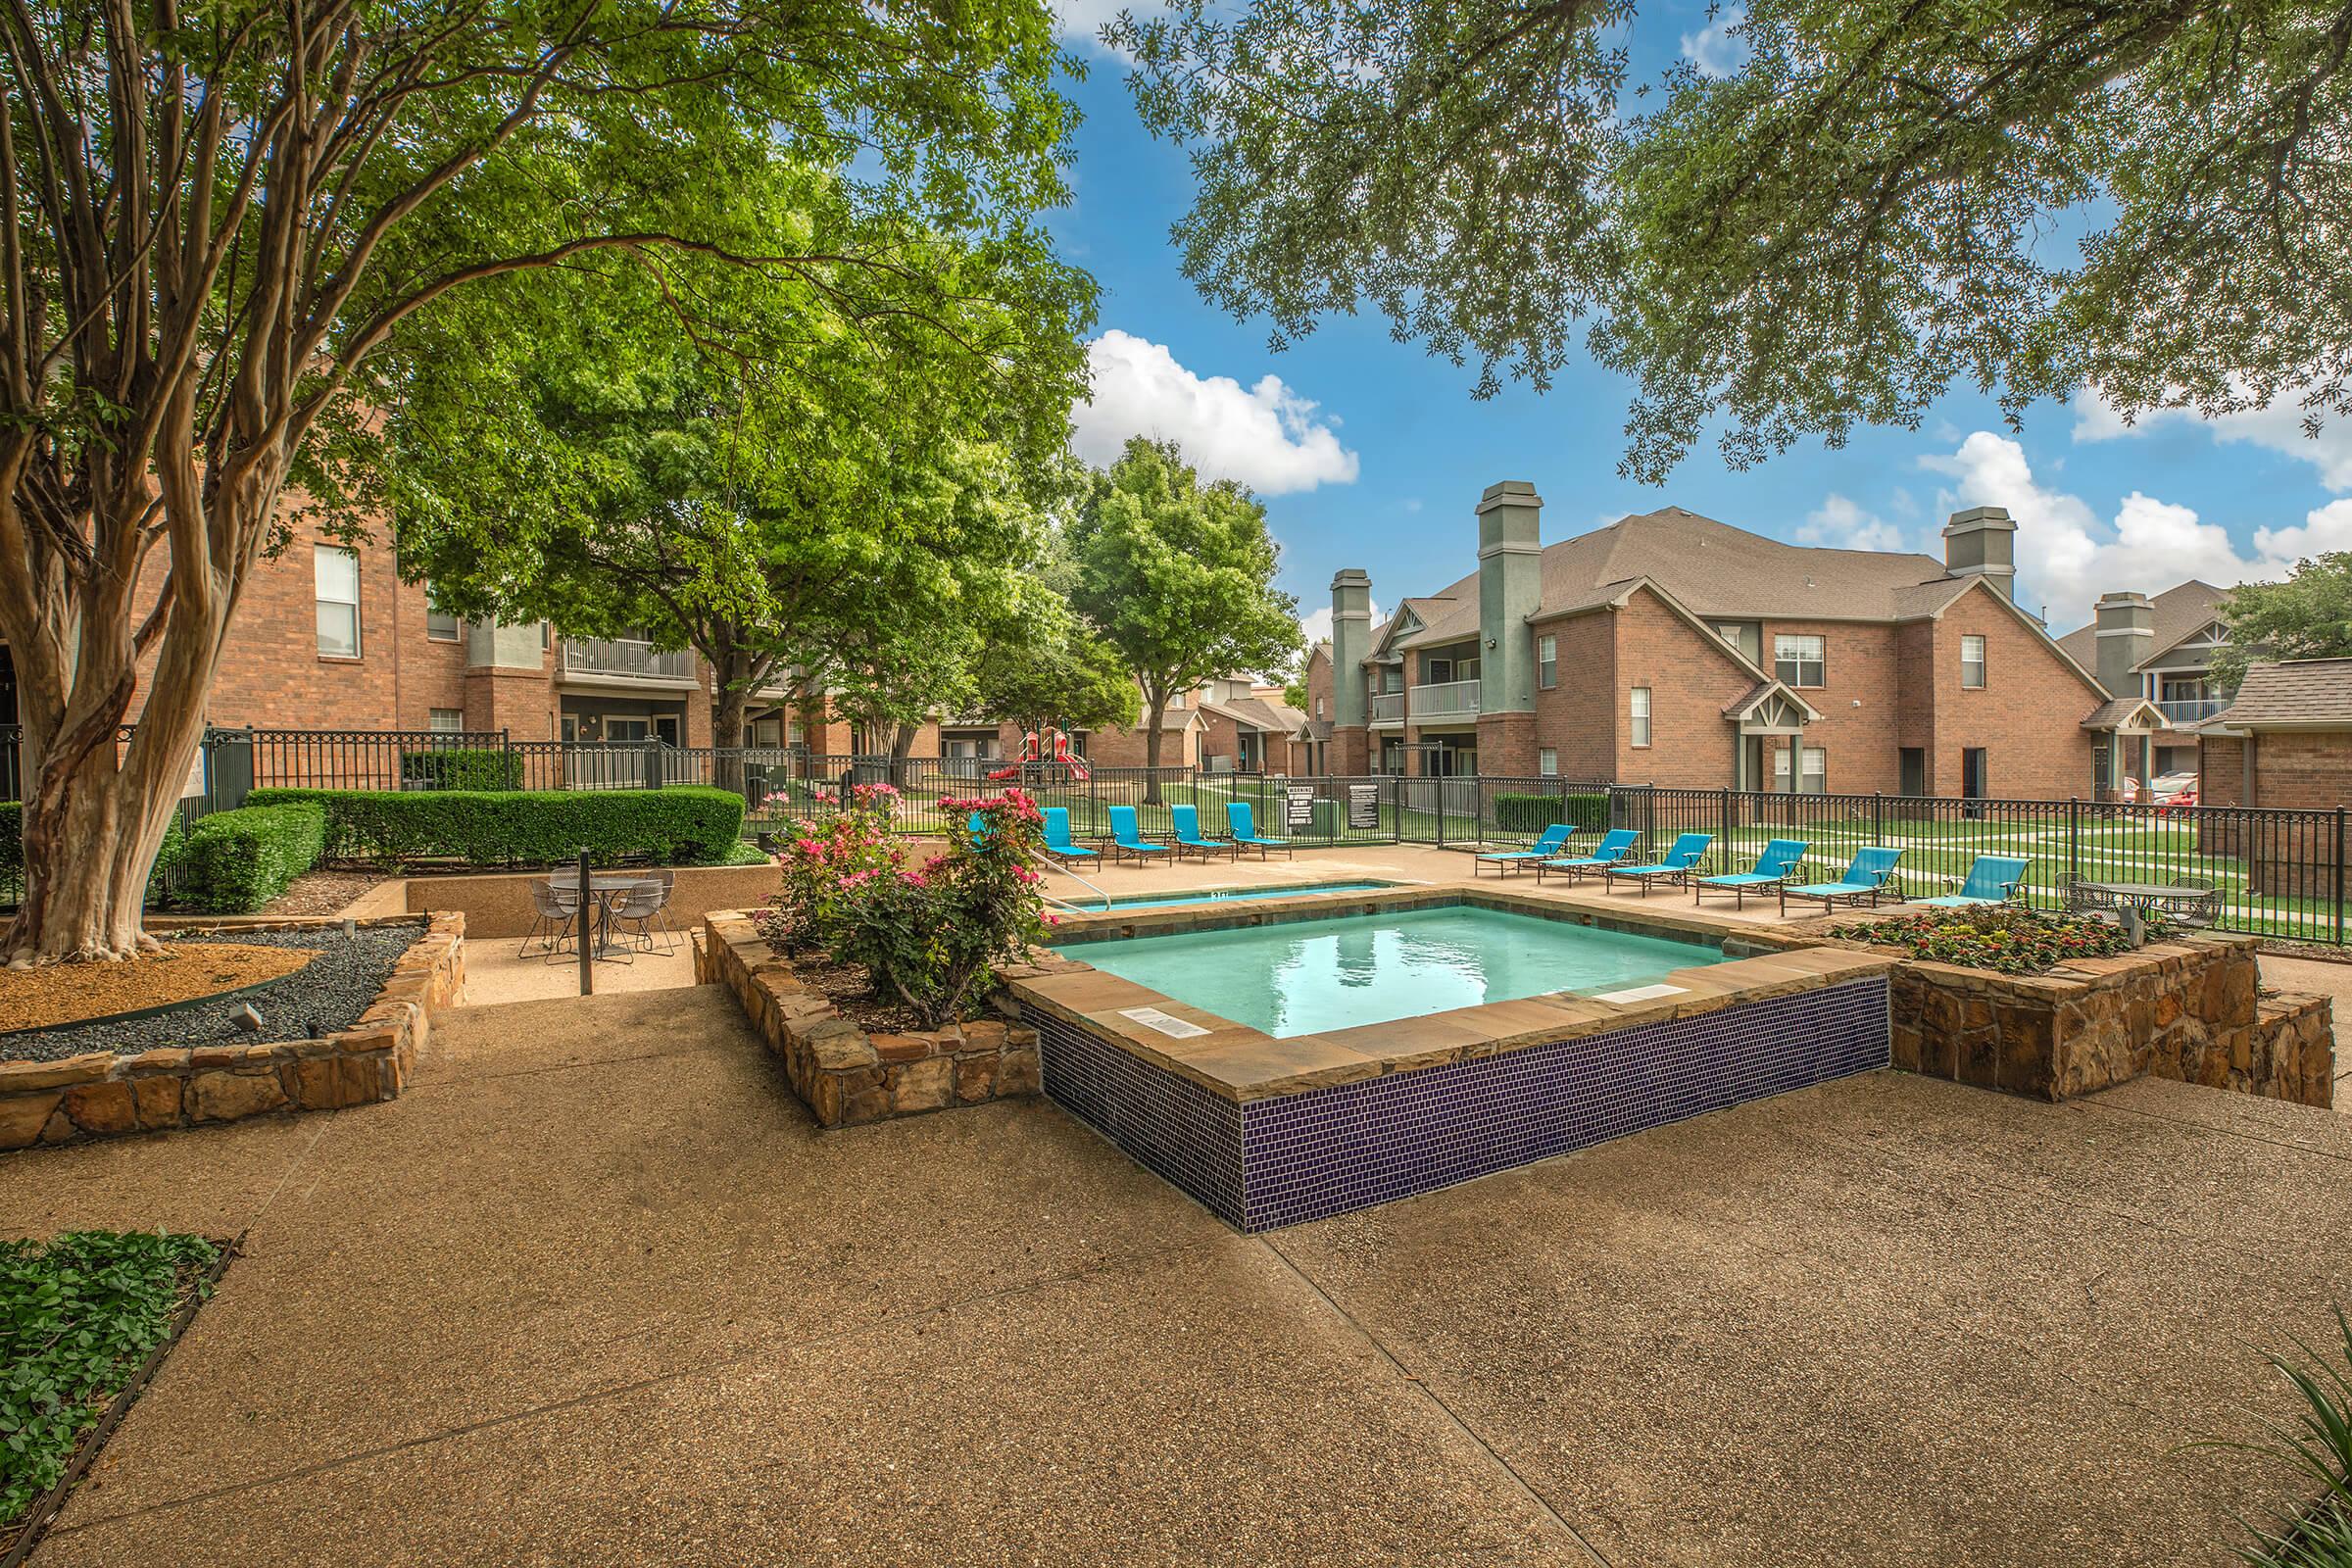 a community pool